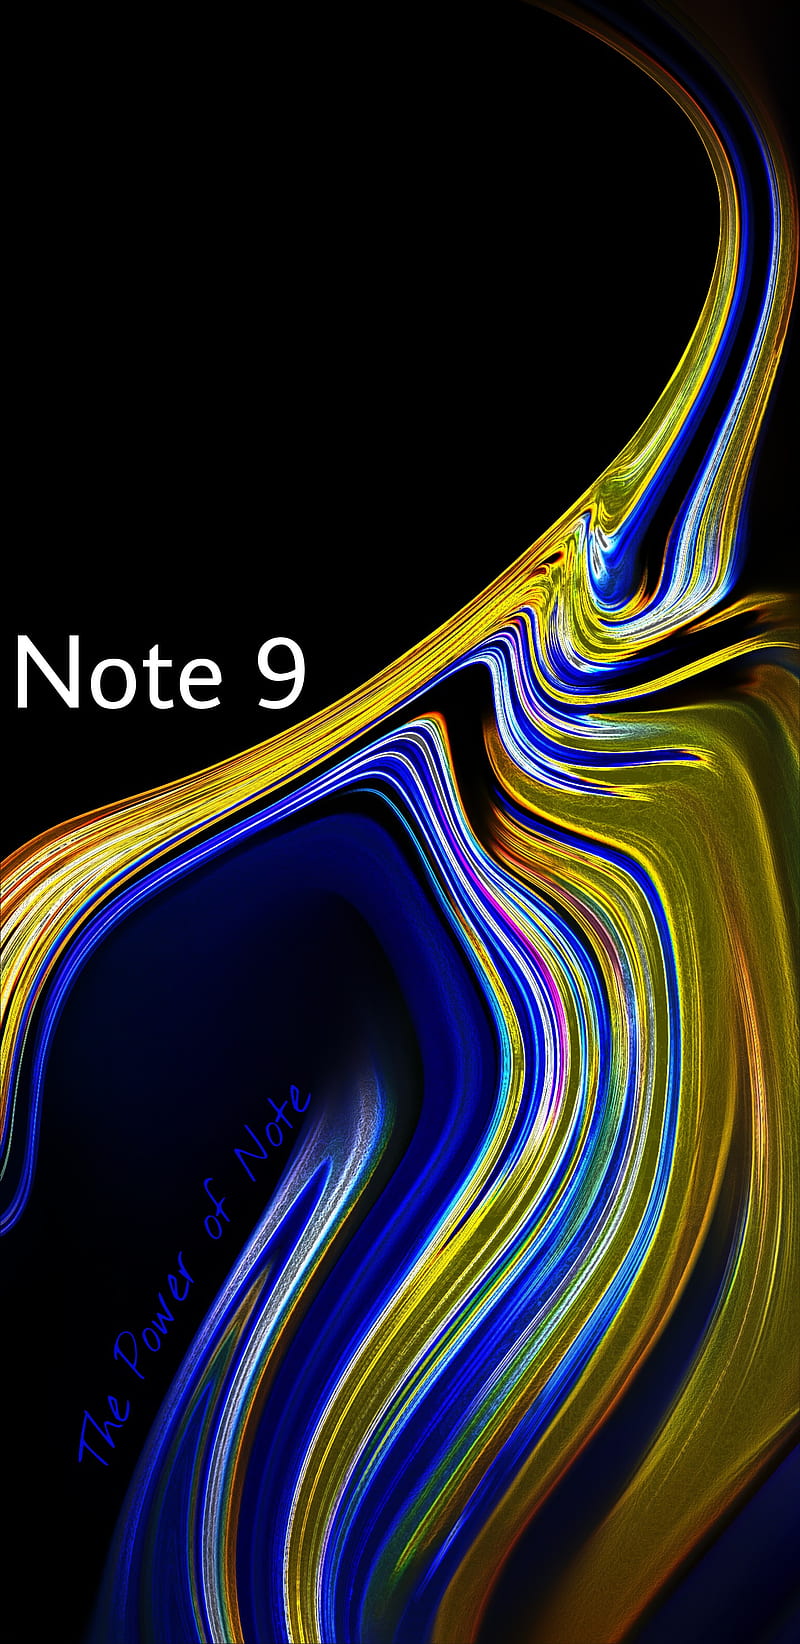 Điện thoại Note 9: Đến với Samsung Galaxy Note 9 với hình ảnh đậm chất công nghệ sống động và rực rỡ. Hãy thưởng thức trọn vẹn mọi chi tiết với màn hình lớn và độ phân giải ấn tượng trên điện thoại này.